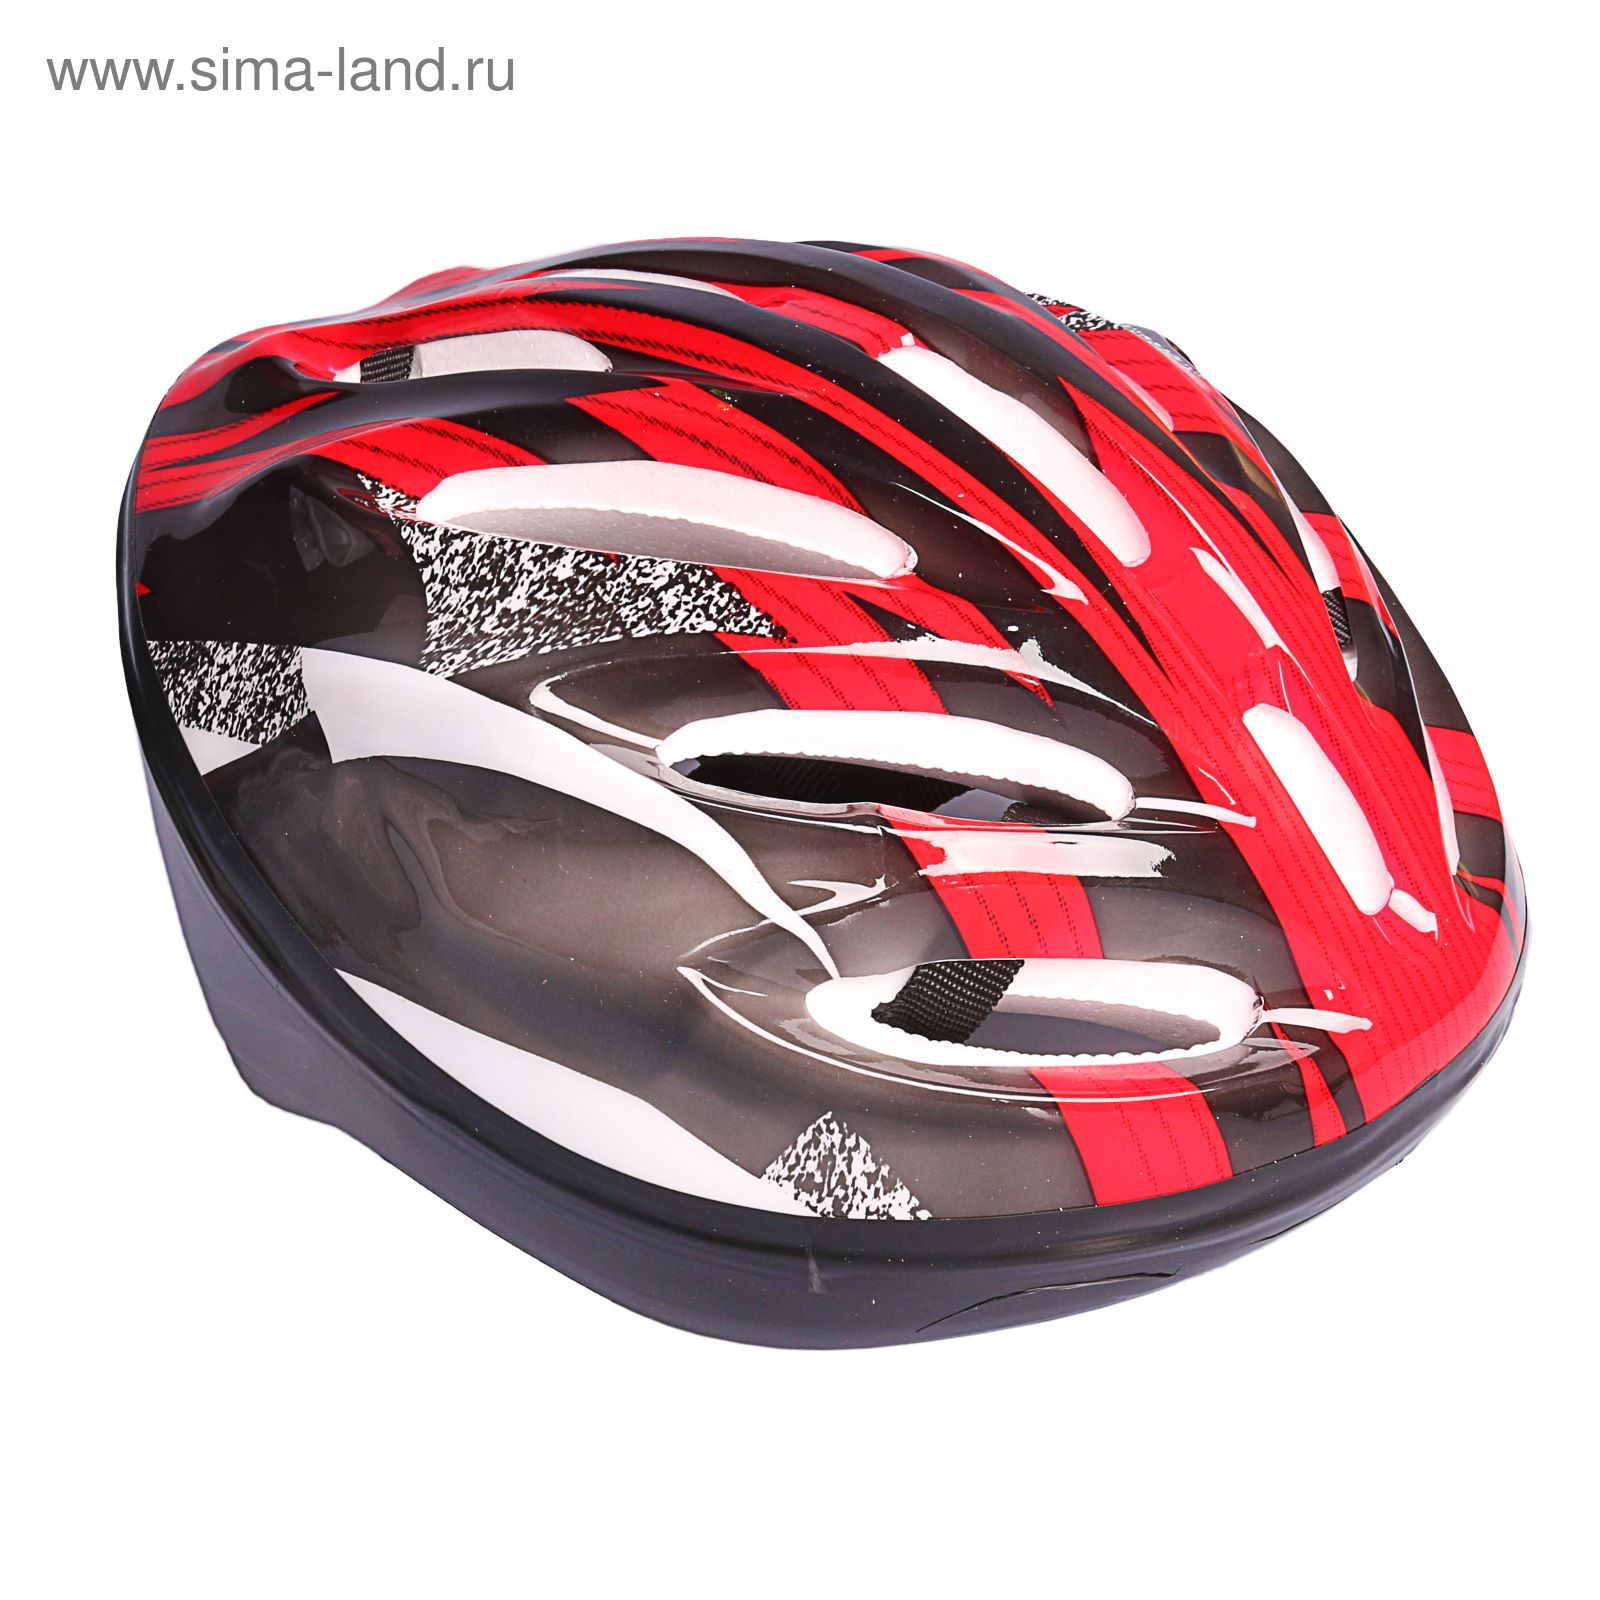 Шлем велосипедиста взрослый ОТ-11, размер L (56-58 см), цвет: красный